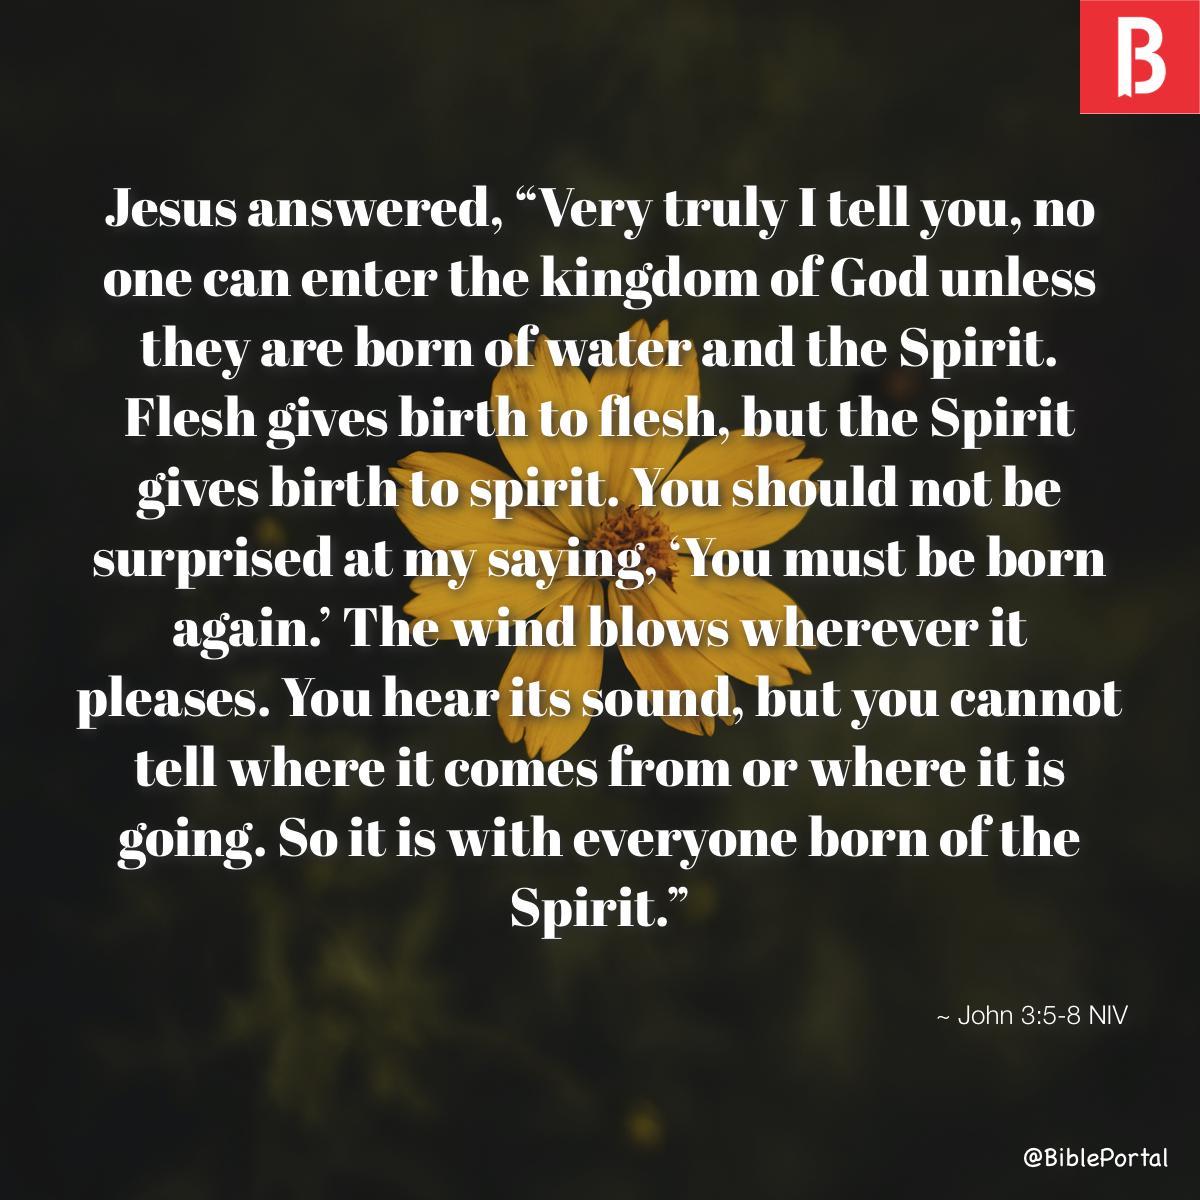 John 3:5-8 NIV